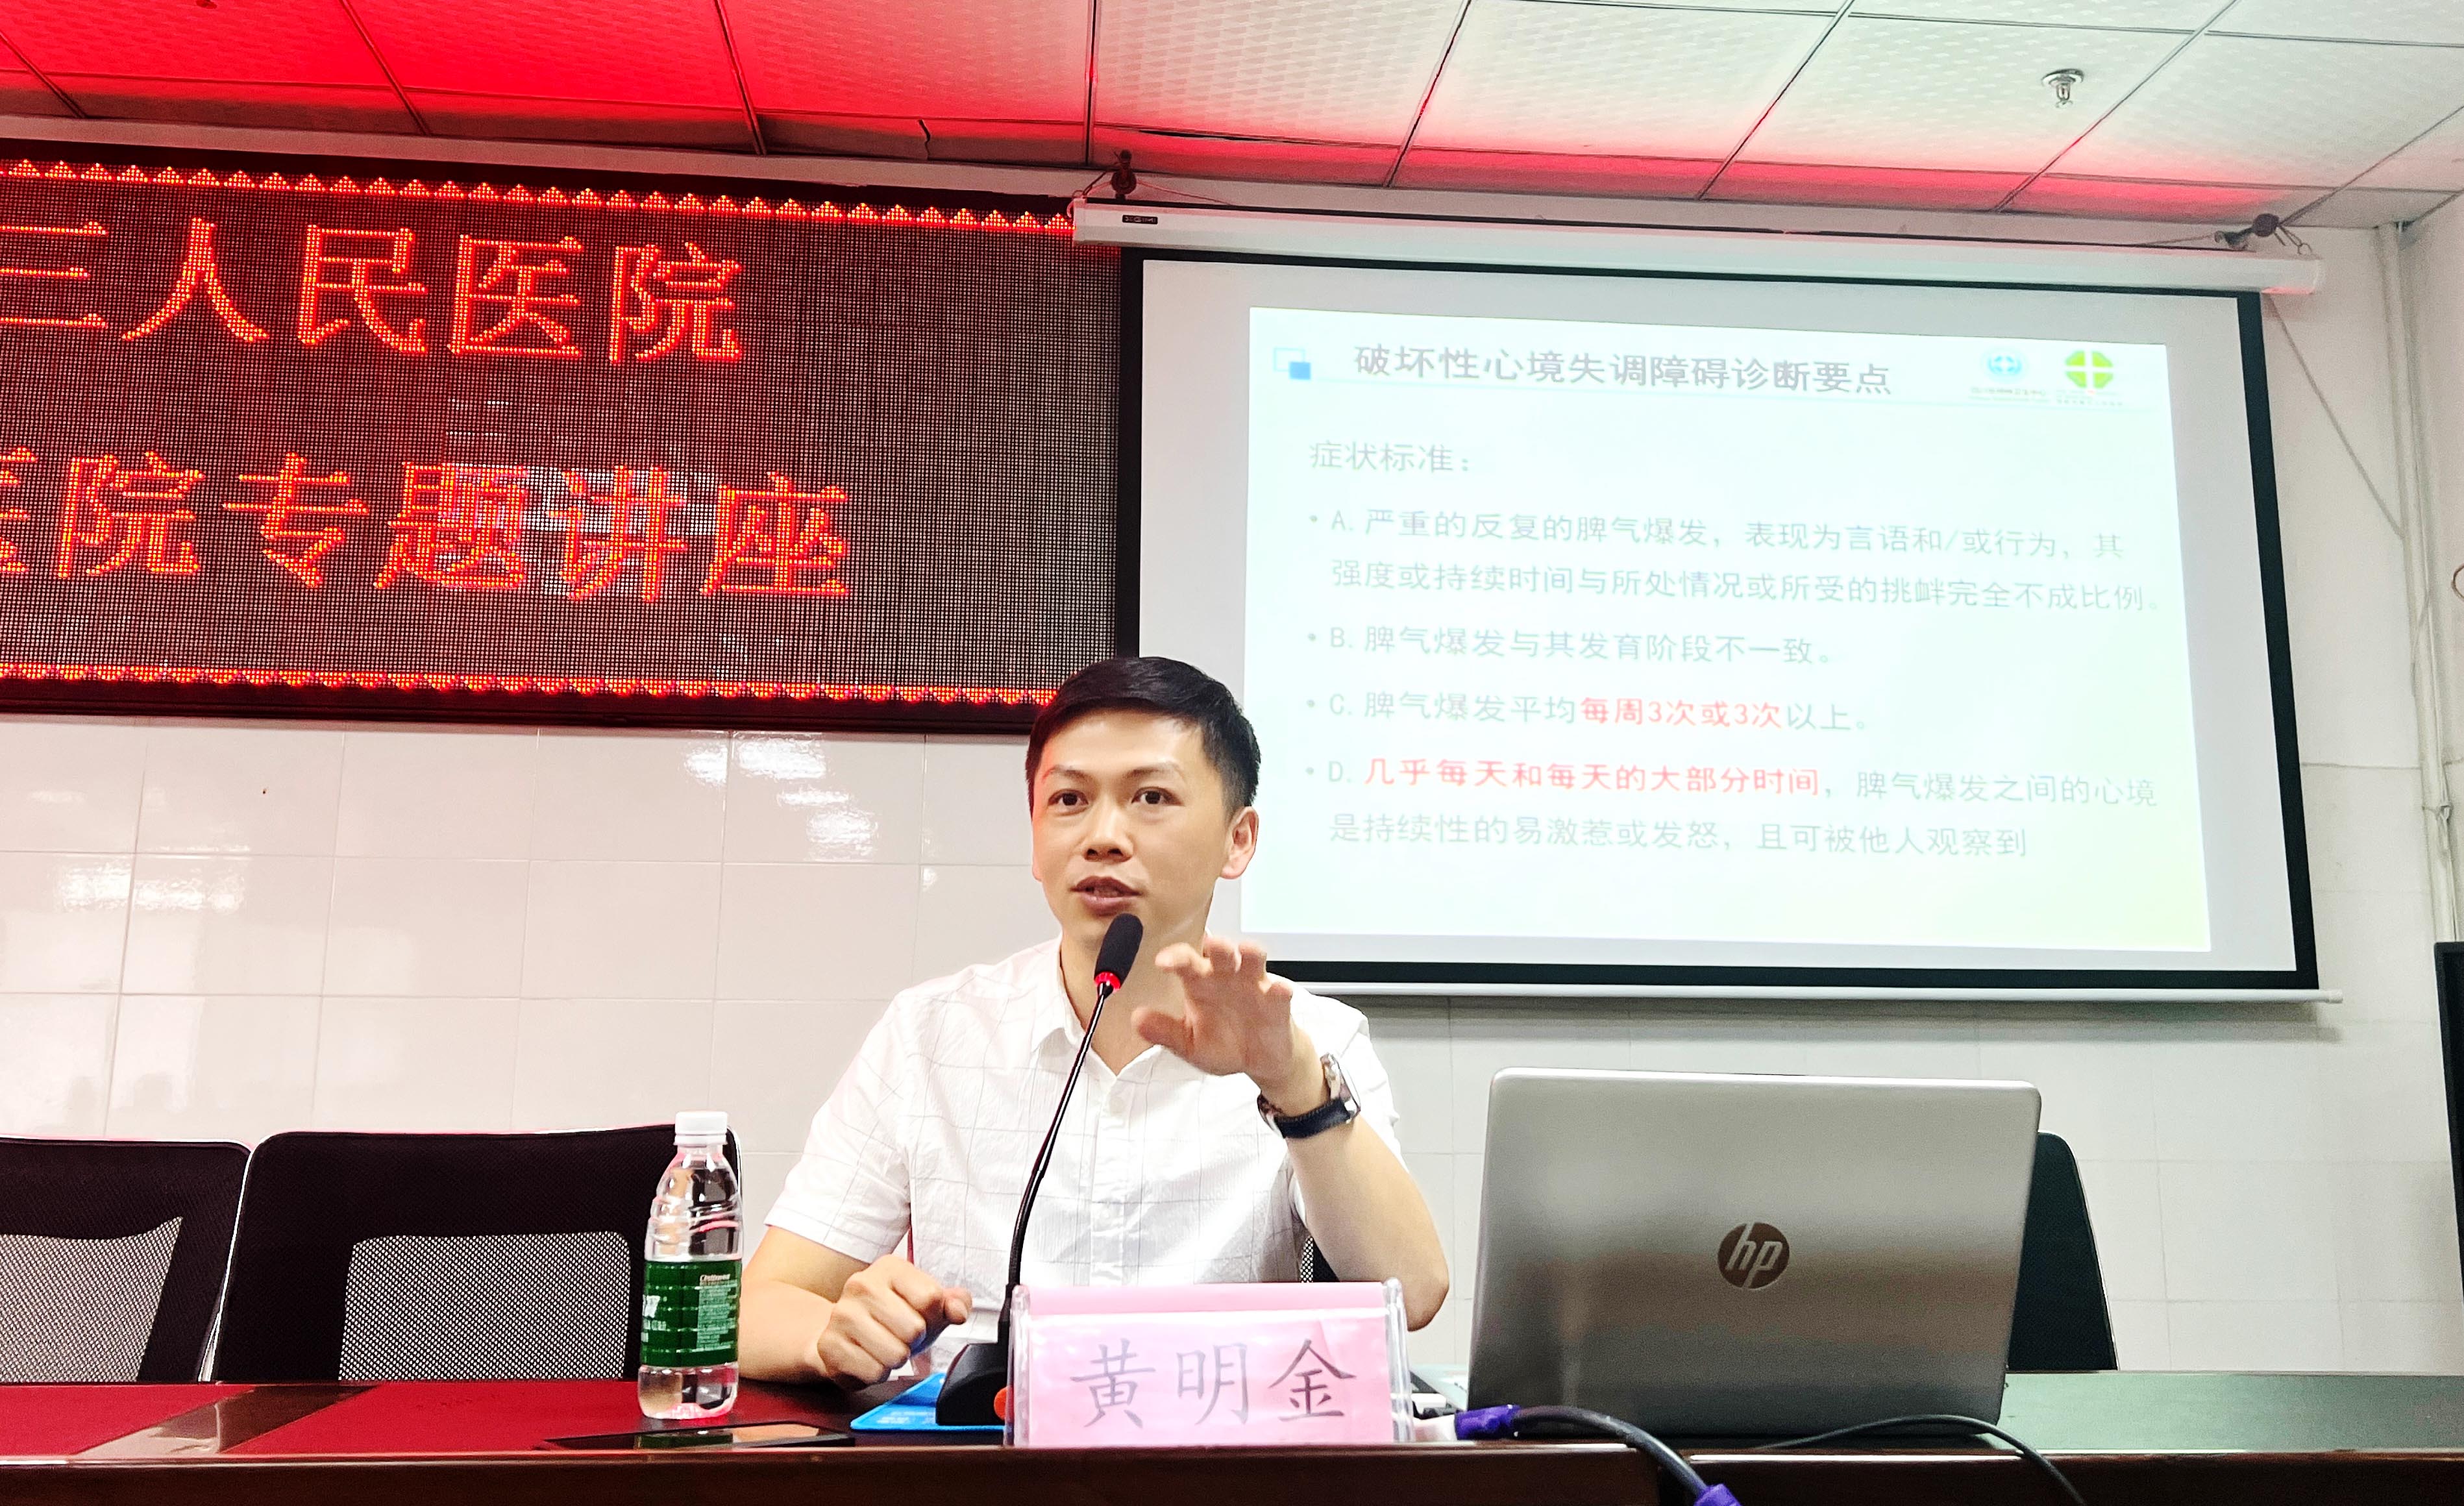 中江县精神病医院与绵阳市第三人民医院签订医疗合作协议